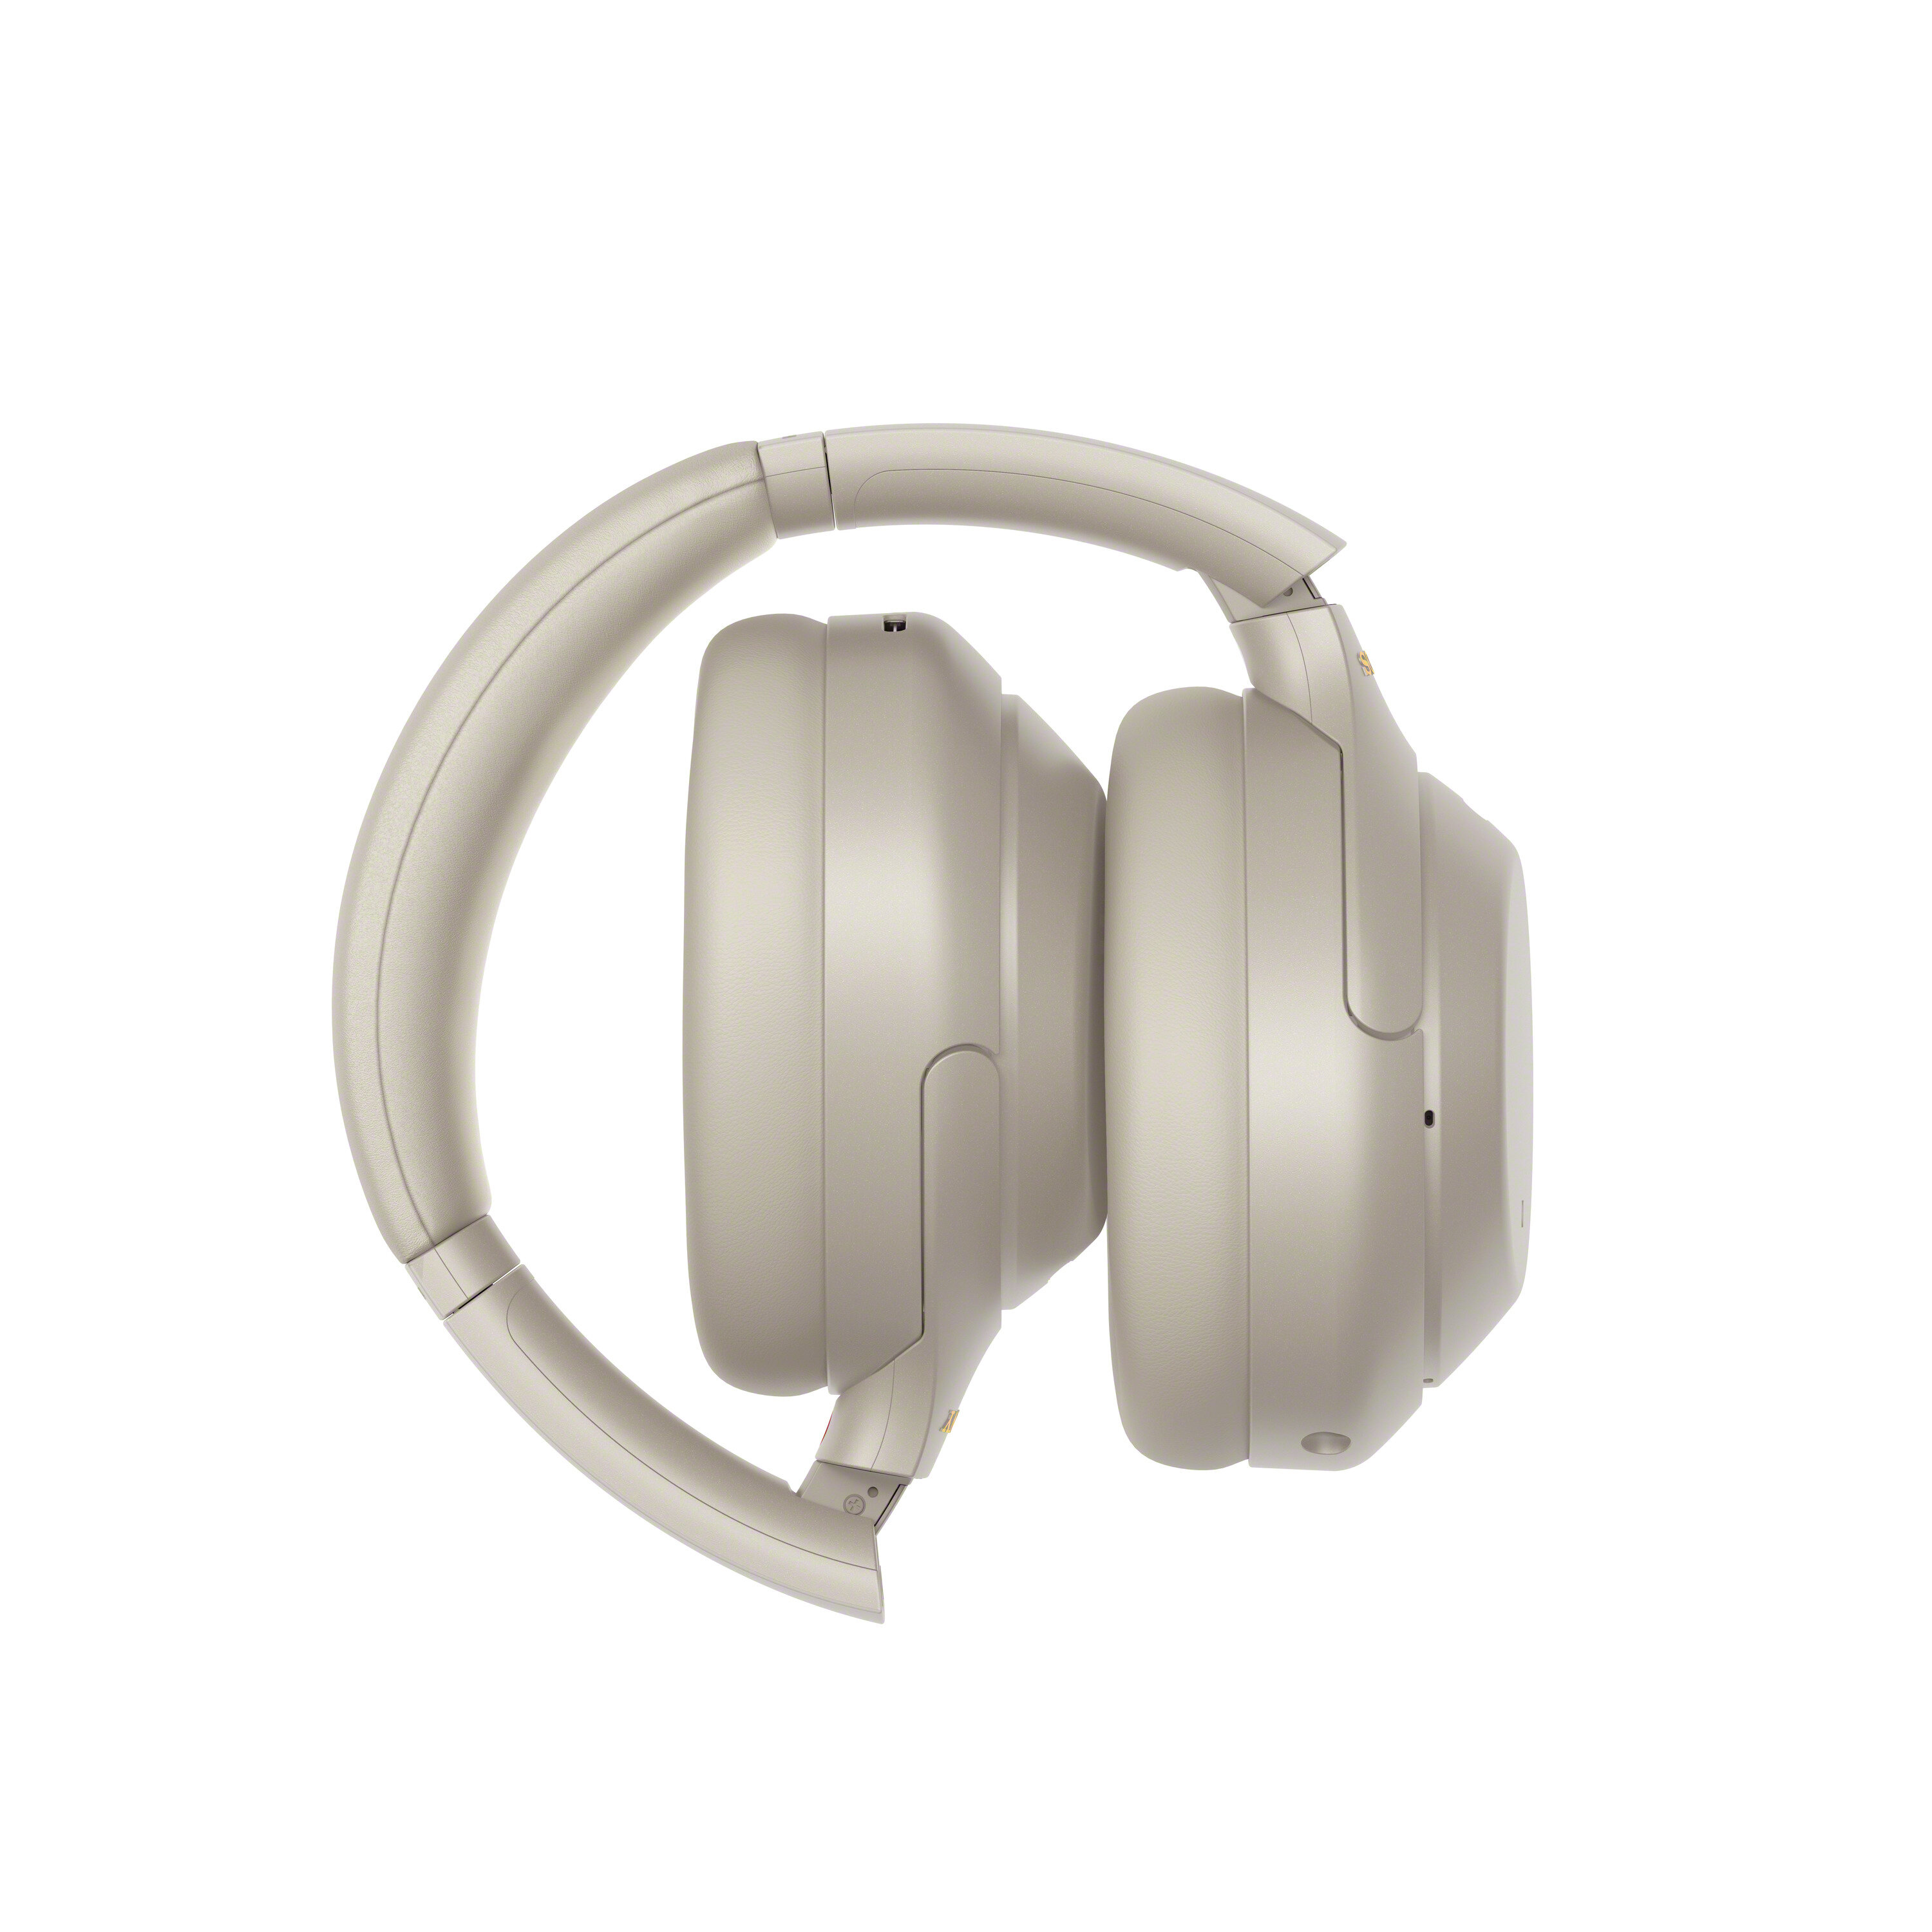 Słuchawki bezprzewodowe Sony (srebrne) | WH-1000XM4S